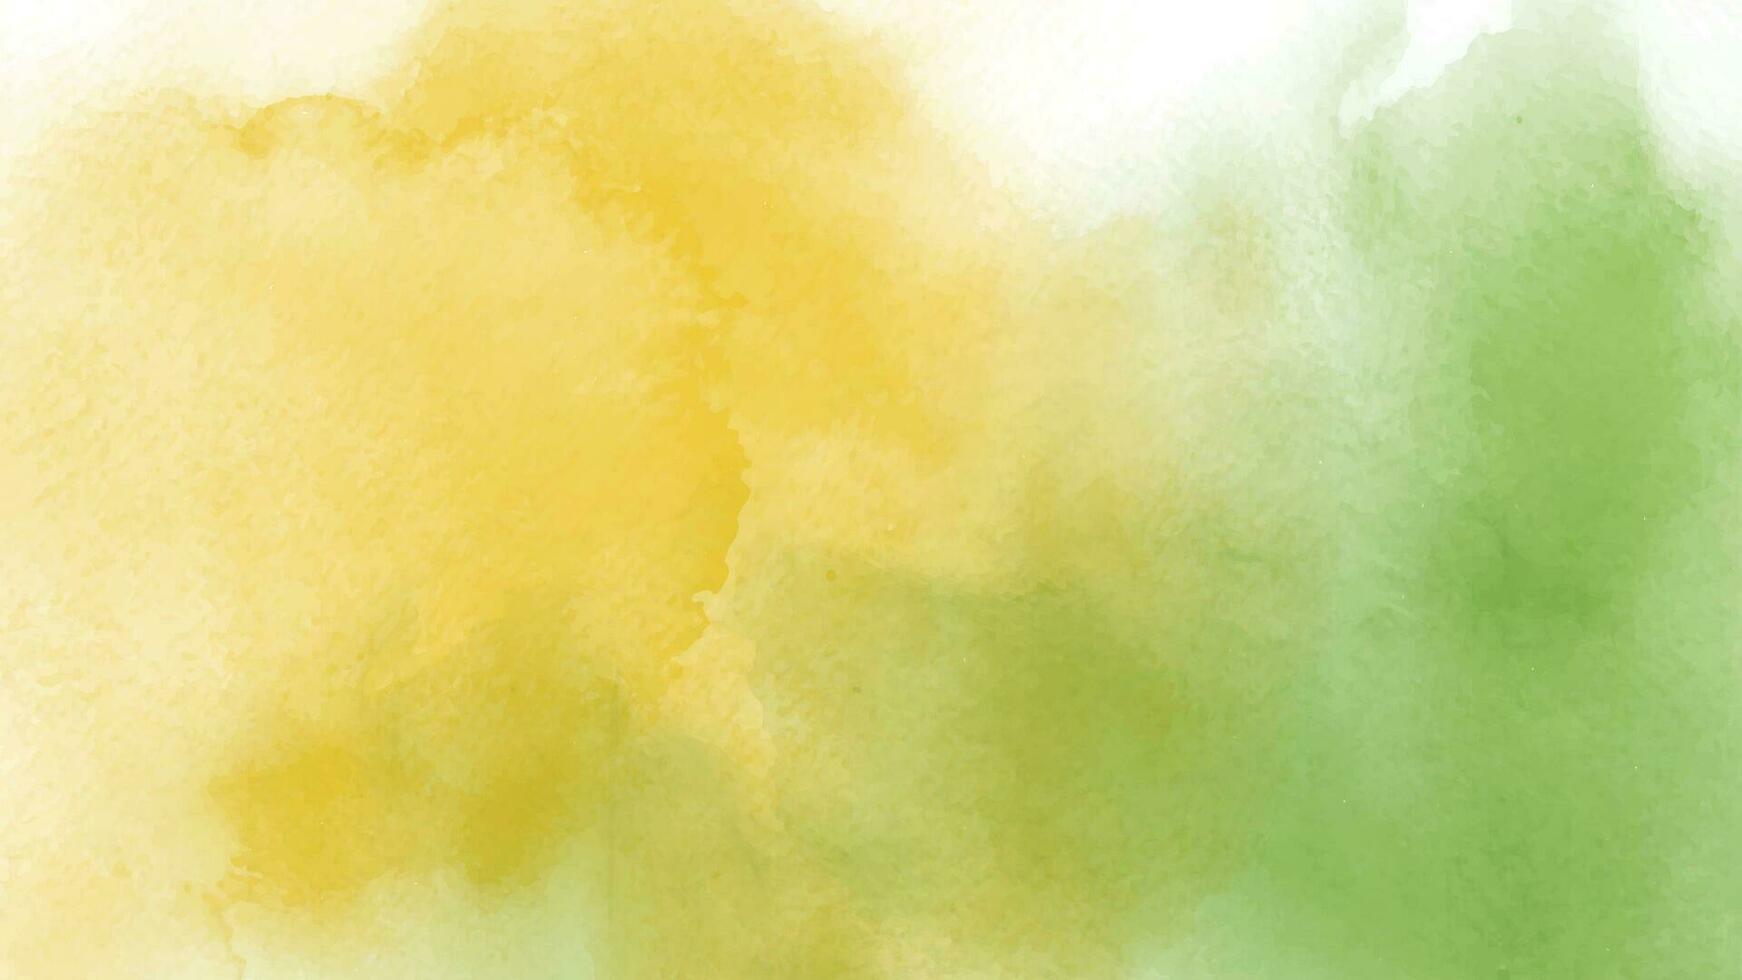 abstrato amarelo e verde aguarela vetor